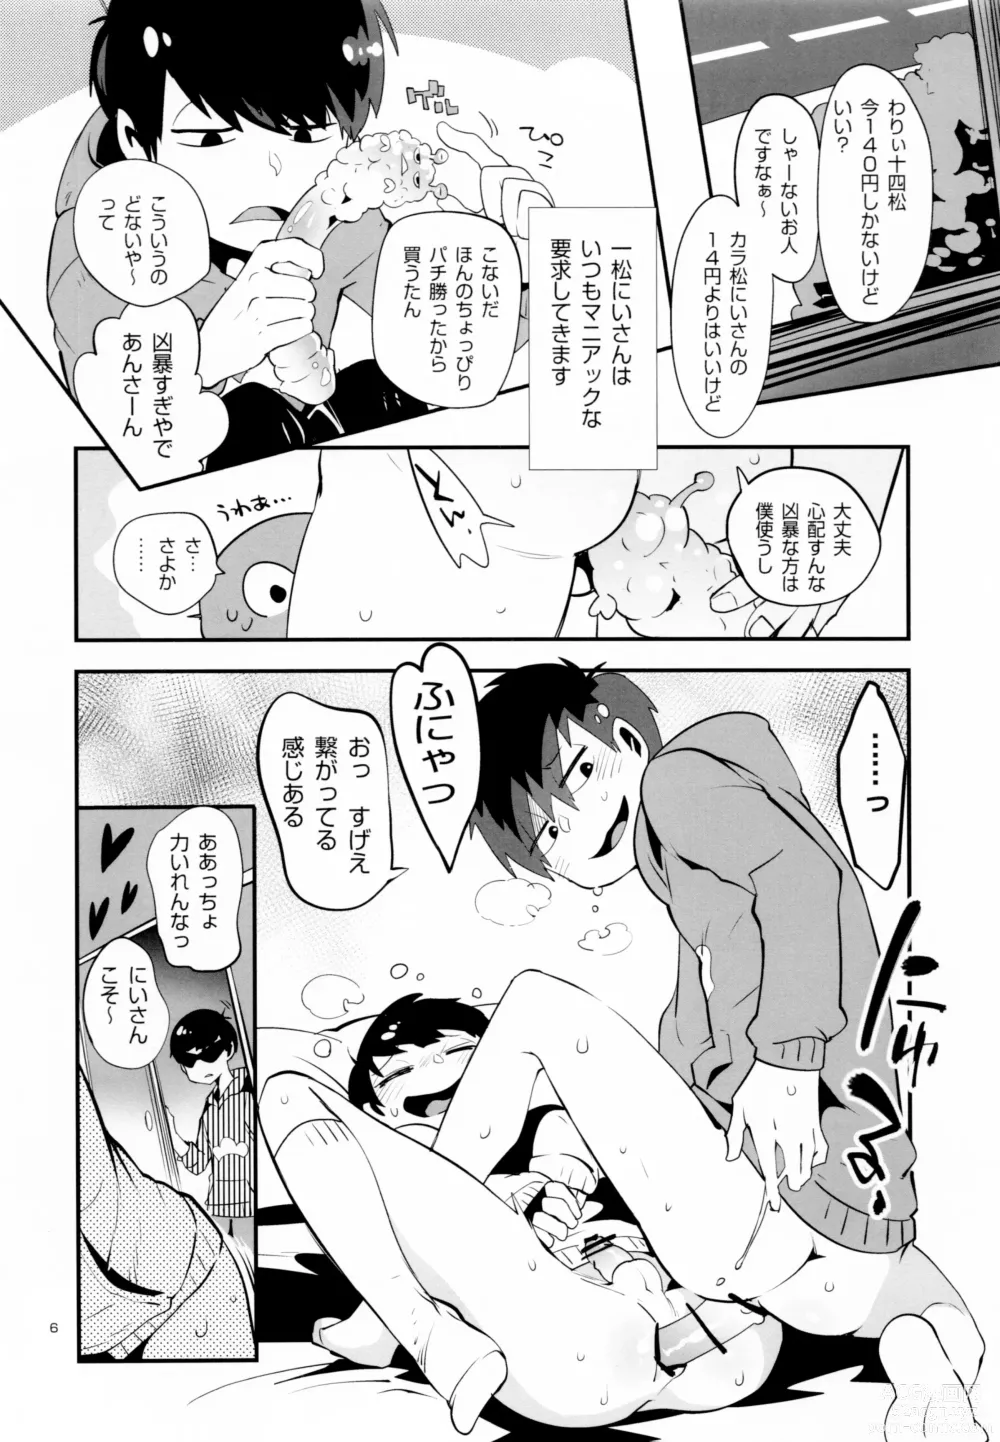 Page 9 of doujinshi Nikubenki no Juushimatsu-kun ni wa Taisetsuna Yume ga Arimasu